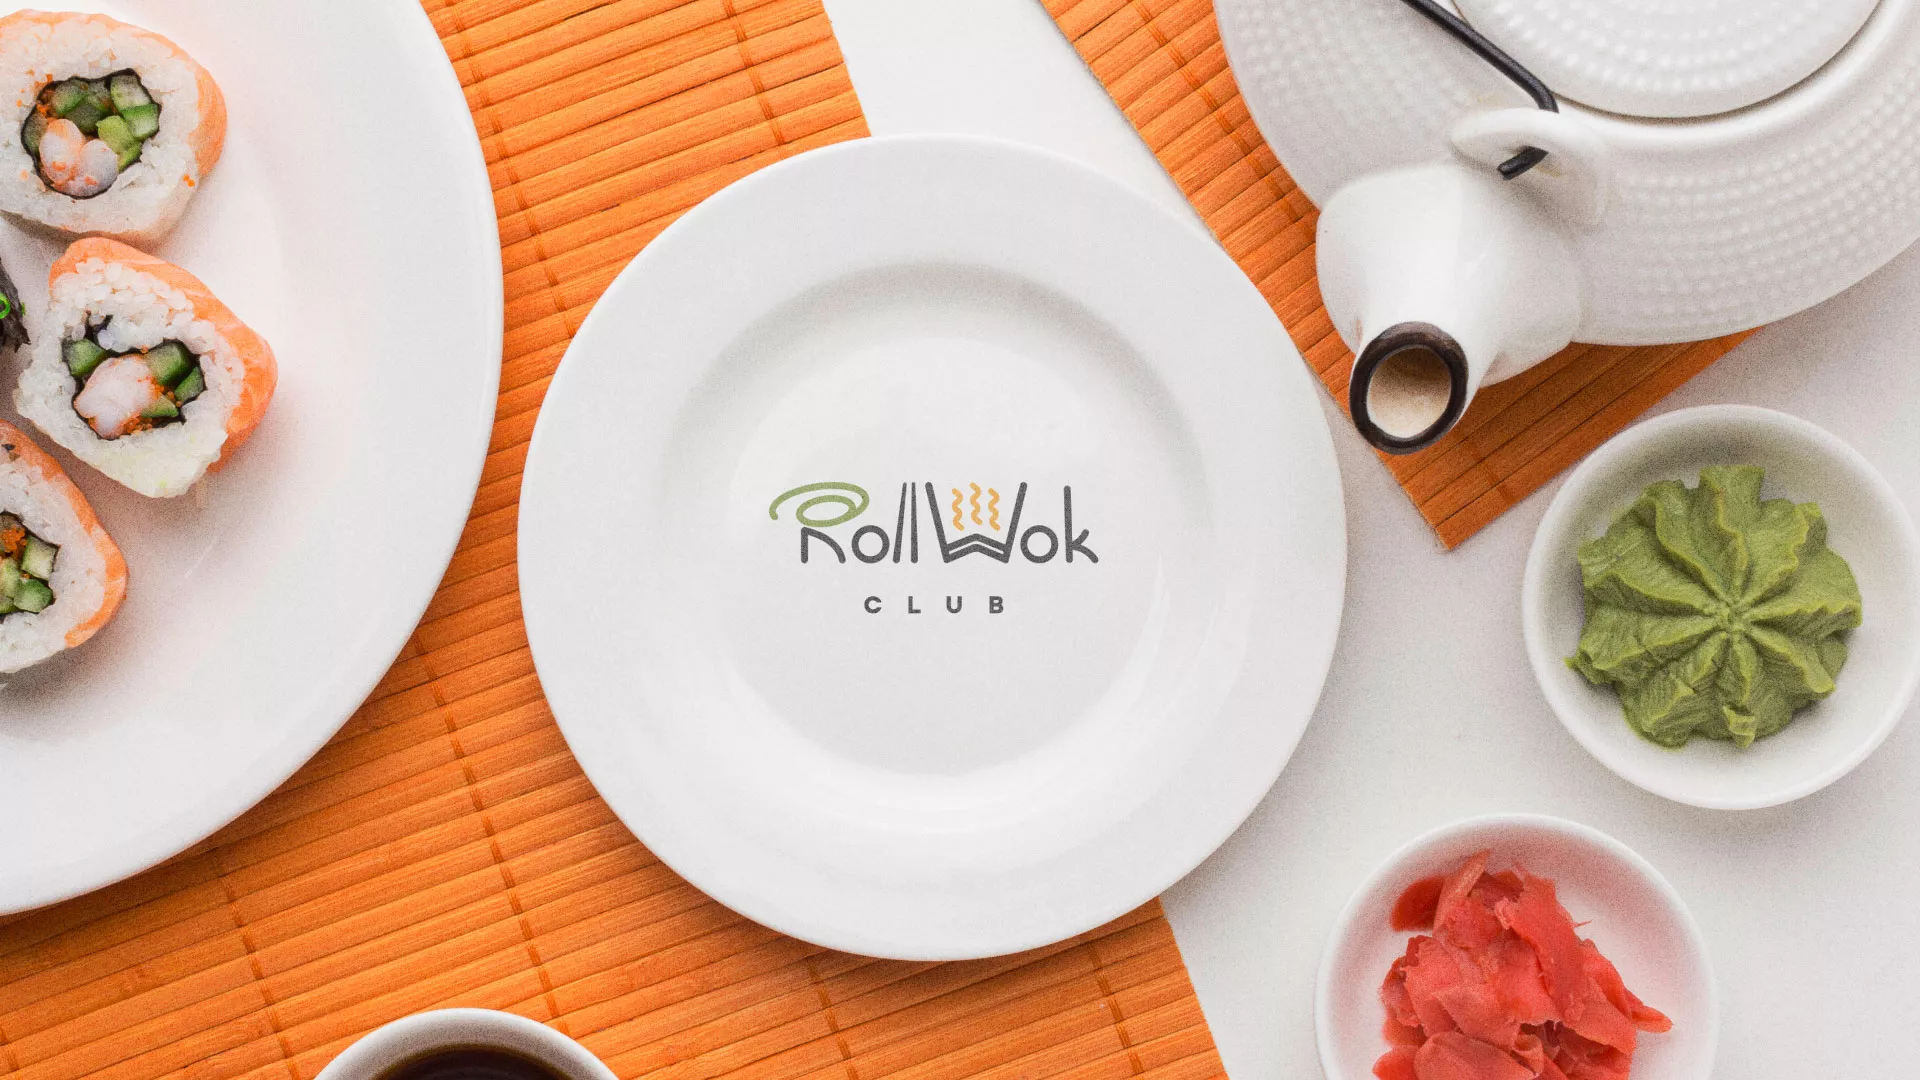 Разработка логотипа и фирменного стиля суши-бара «Roll Wok Club» в Княгинино